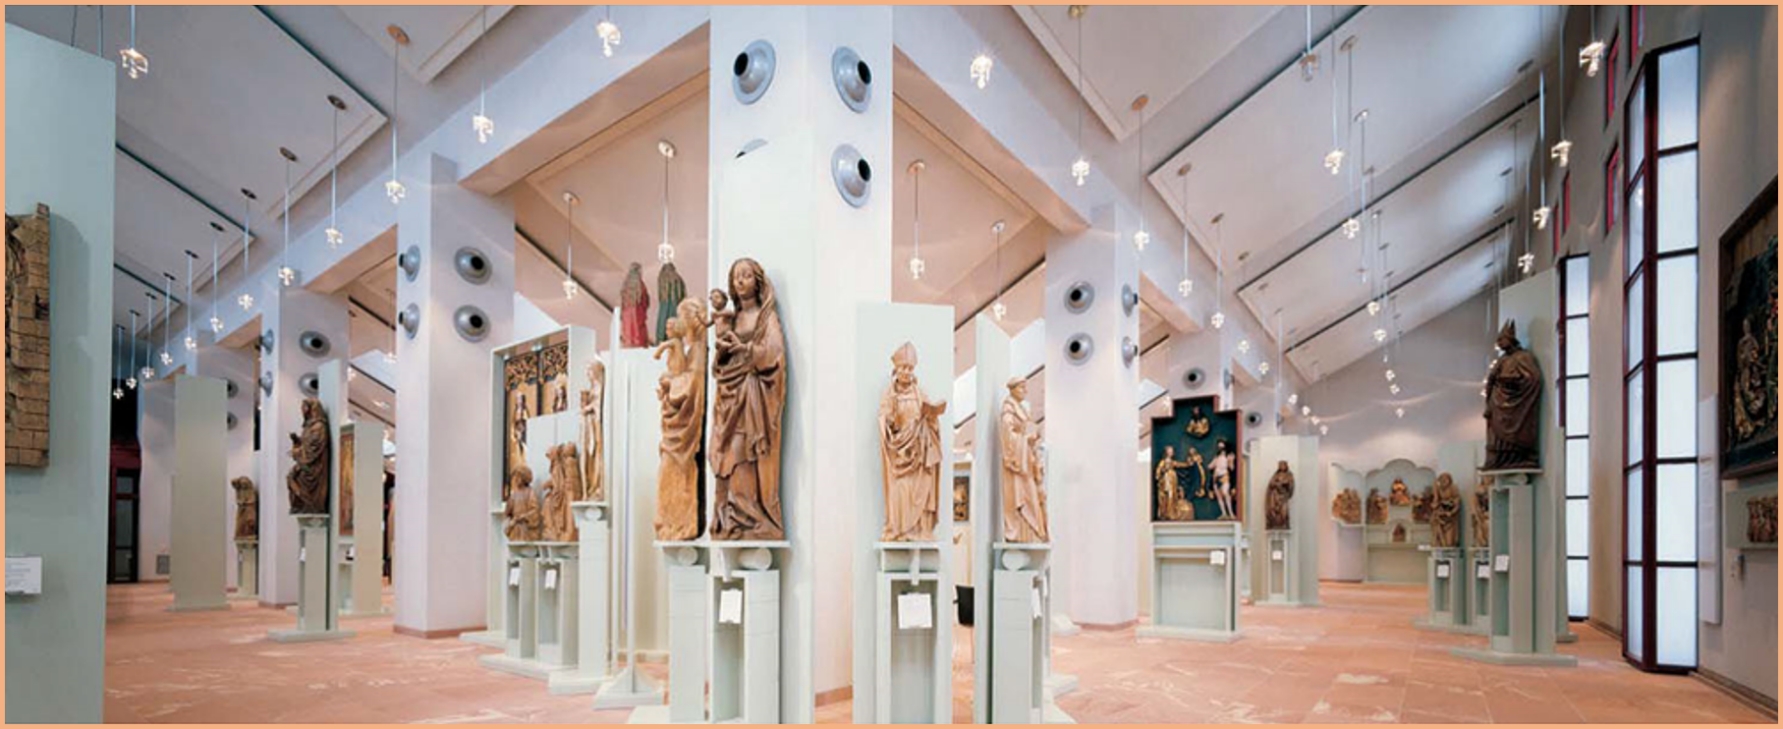 L’ illuminamento negli spazi museali: un compromesso tra conservazione e fruizione delle opere d’arte